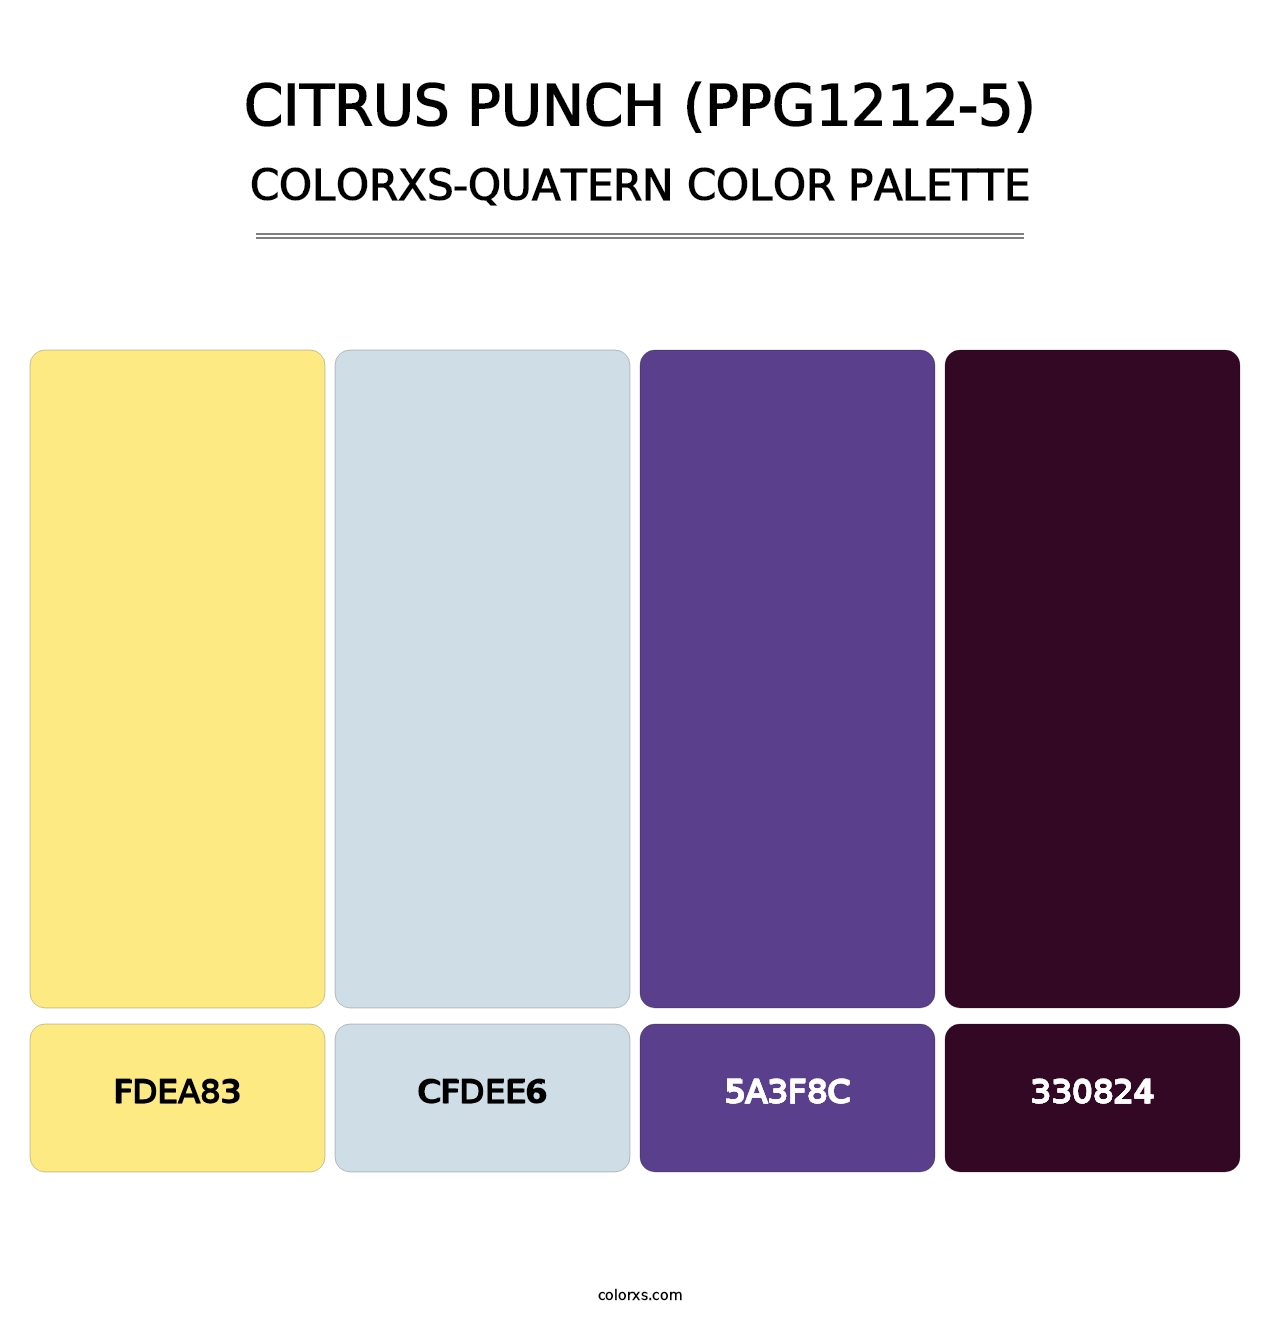 Citrus Punch (PPG1212-5) - Colorxs Quatern Palette